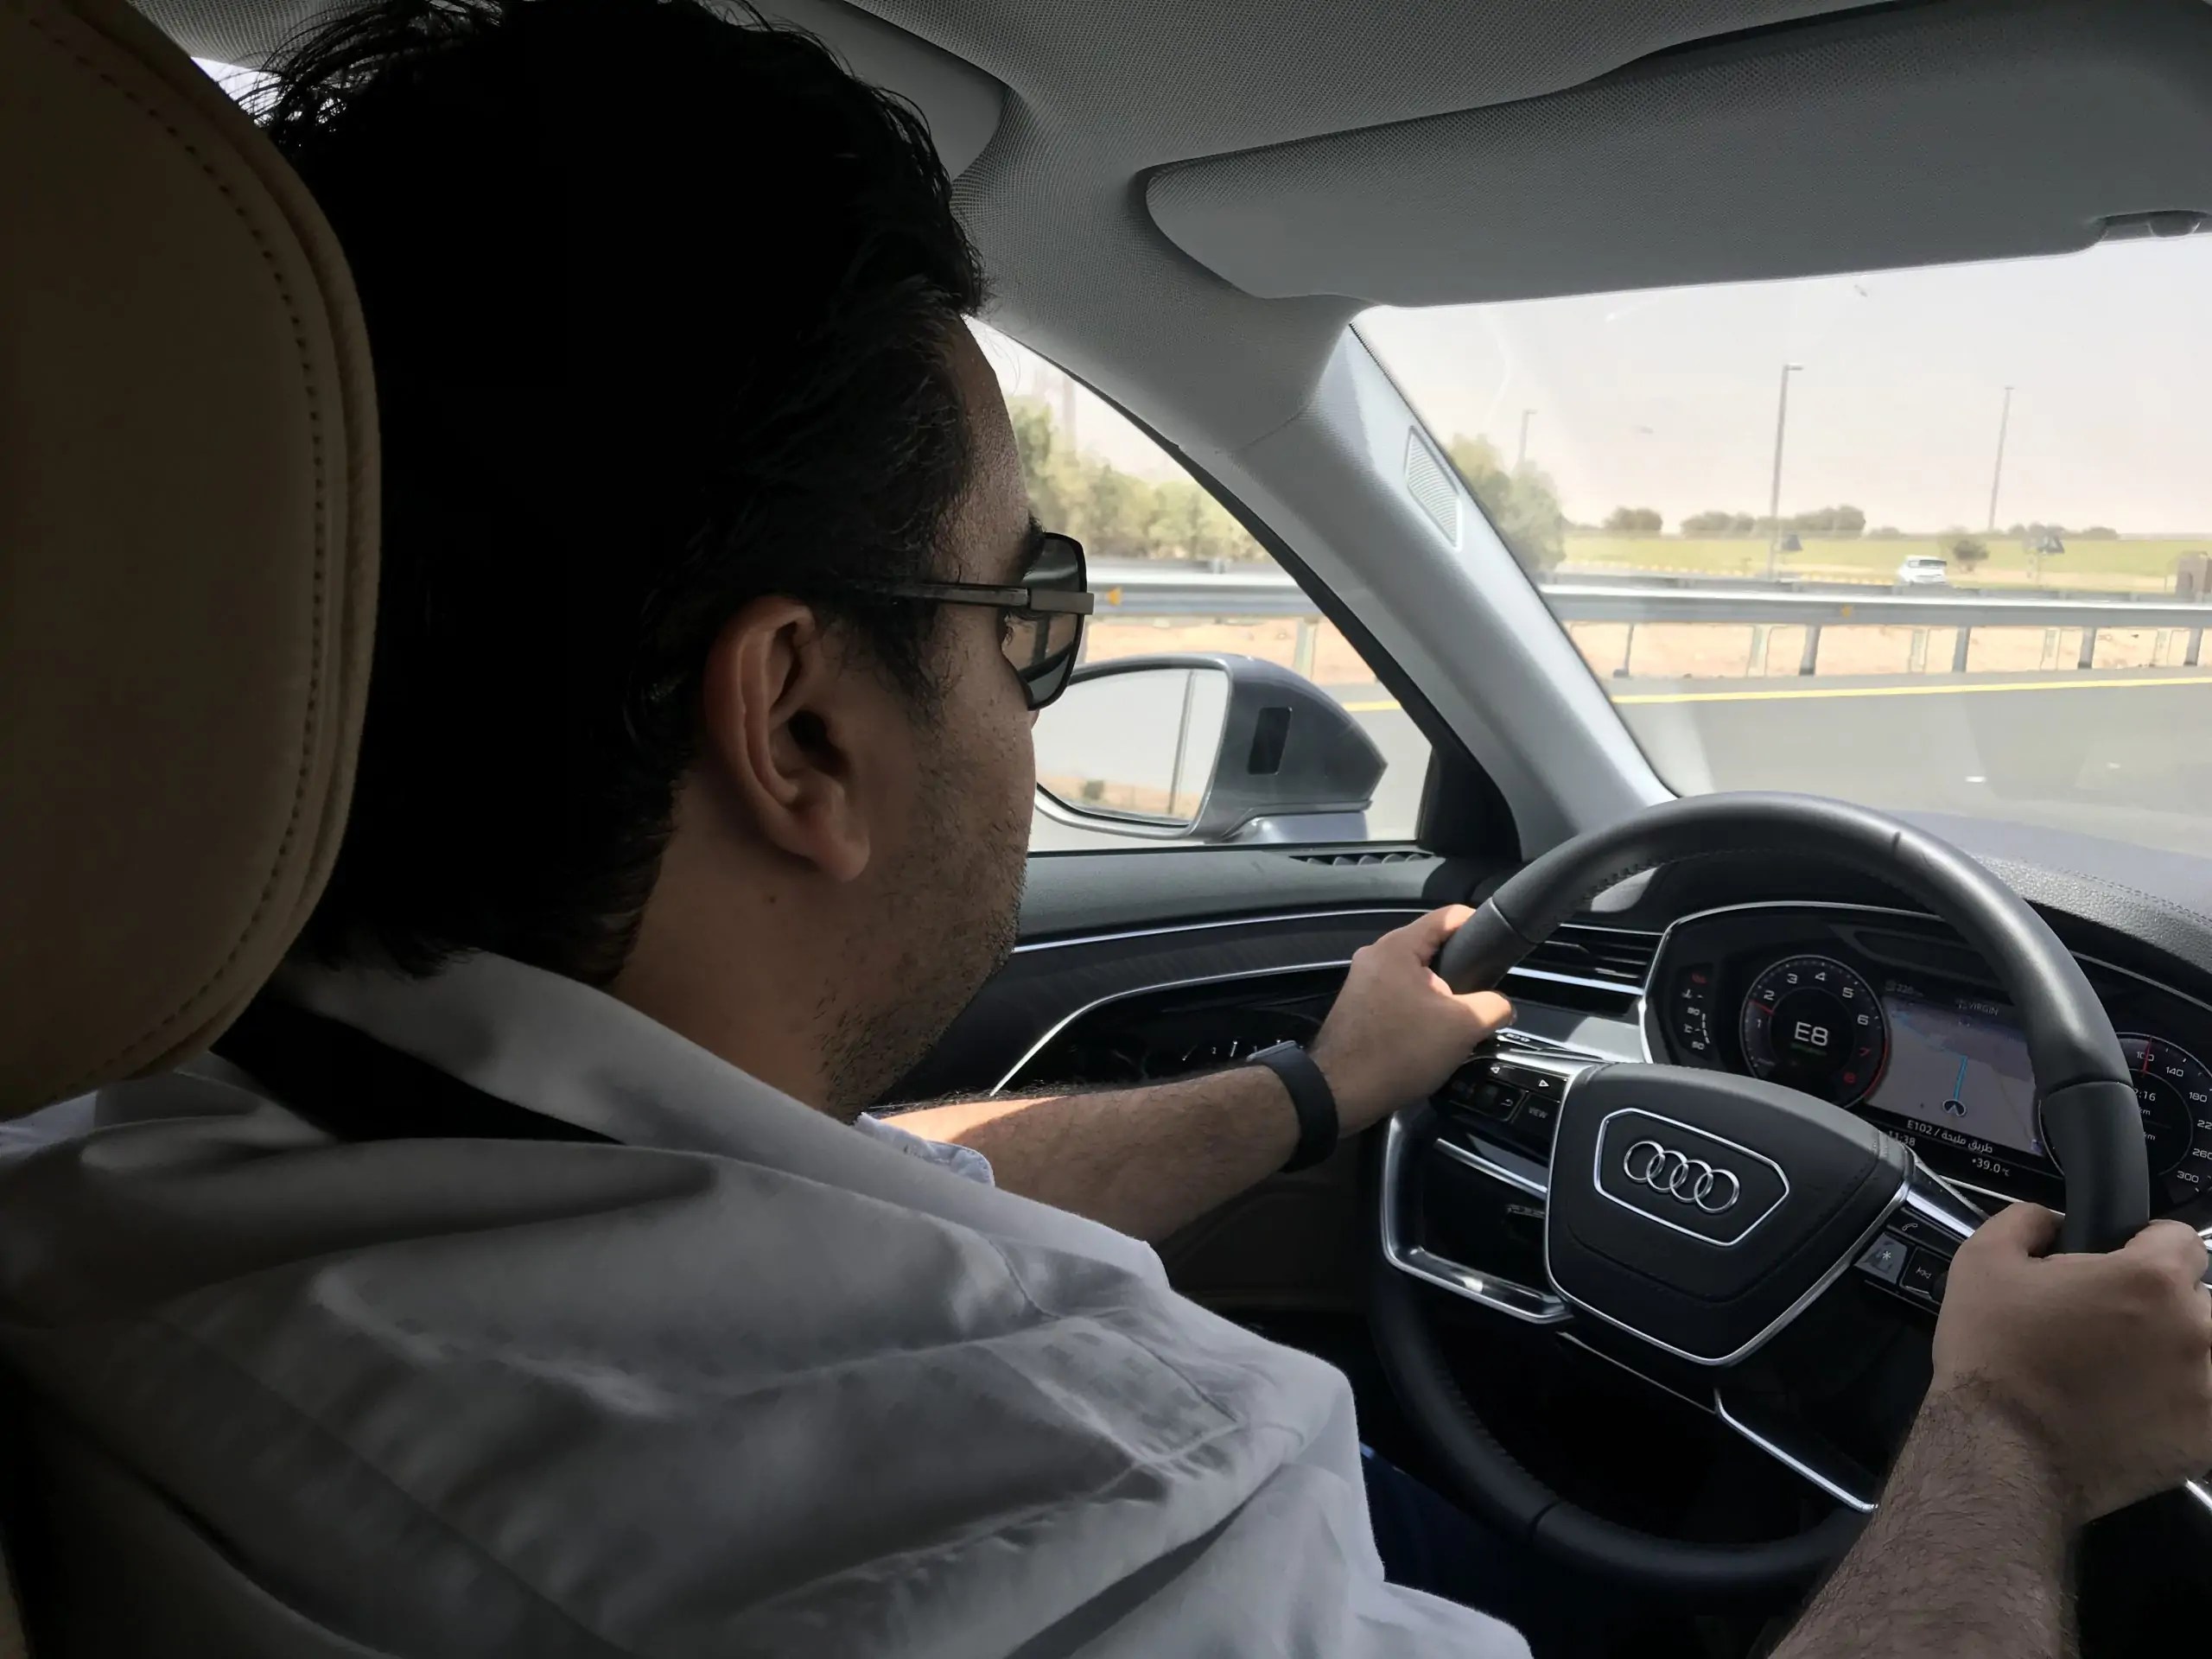 بالفيديو: تجربة أودي A8 الجديدة كليا مع عبدالرحمن الرمّال